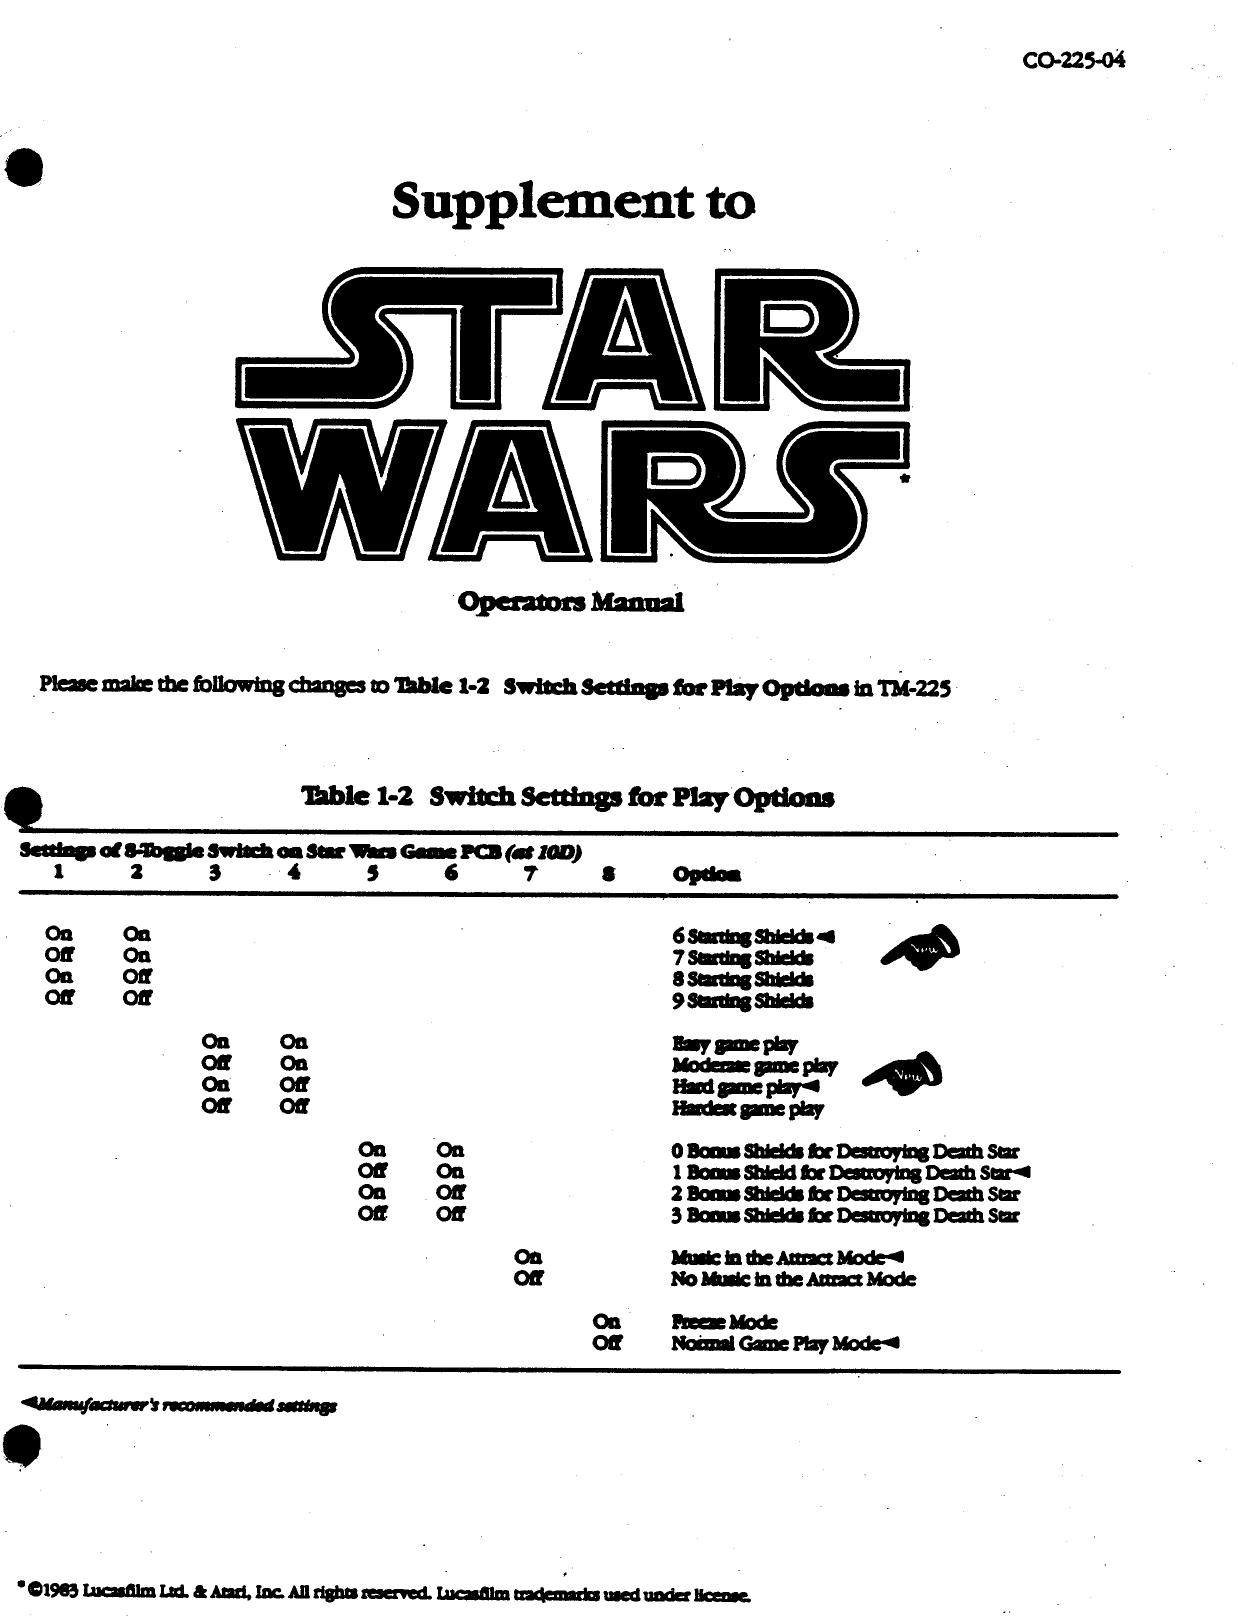 Star Wars (CO-225-04) (Supplement to Op) (U)